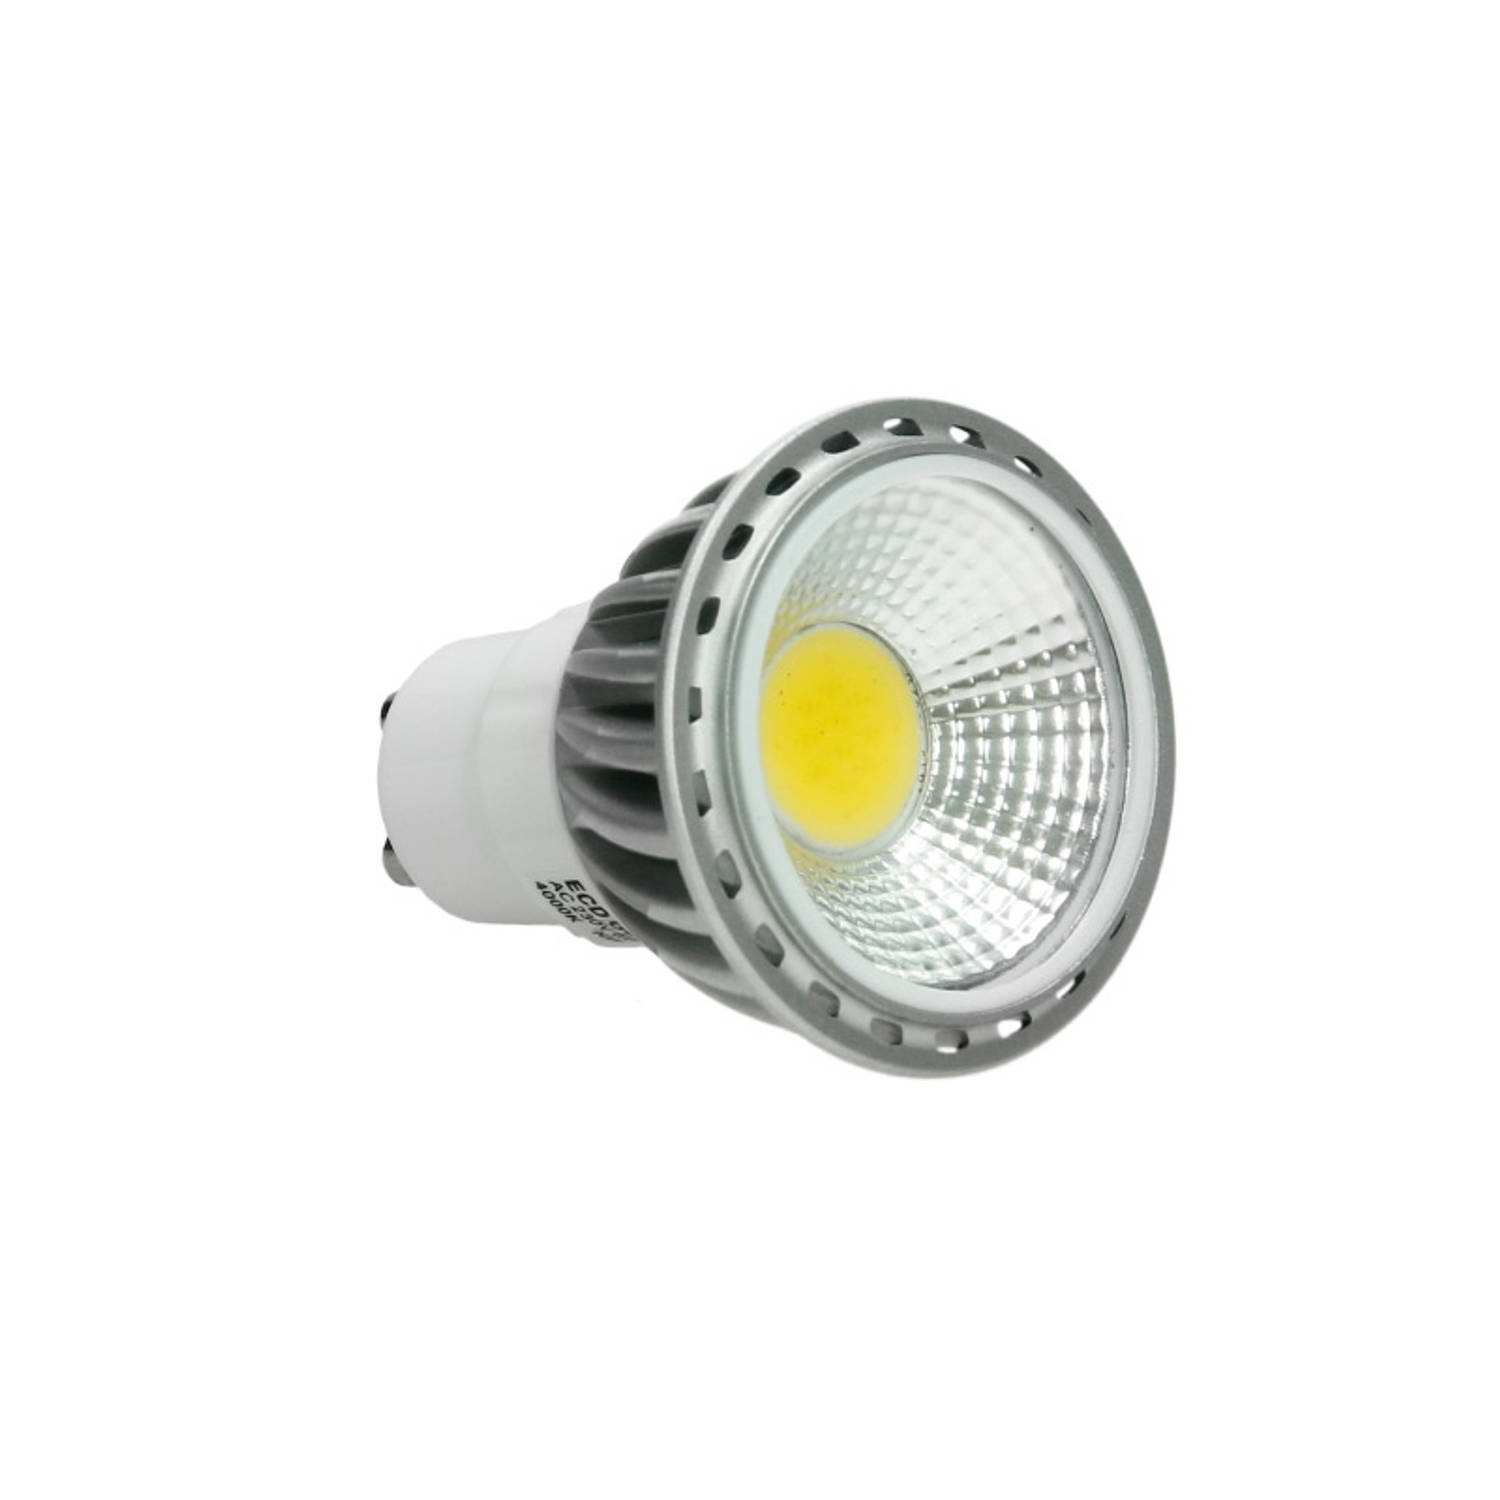 LED reflectorspot koud wit GU10 6 Watt uitvoering COB dimbaar